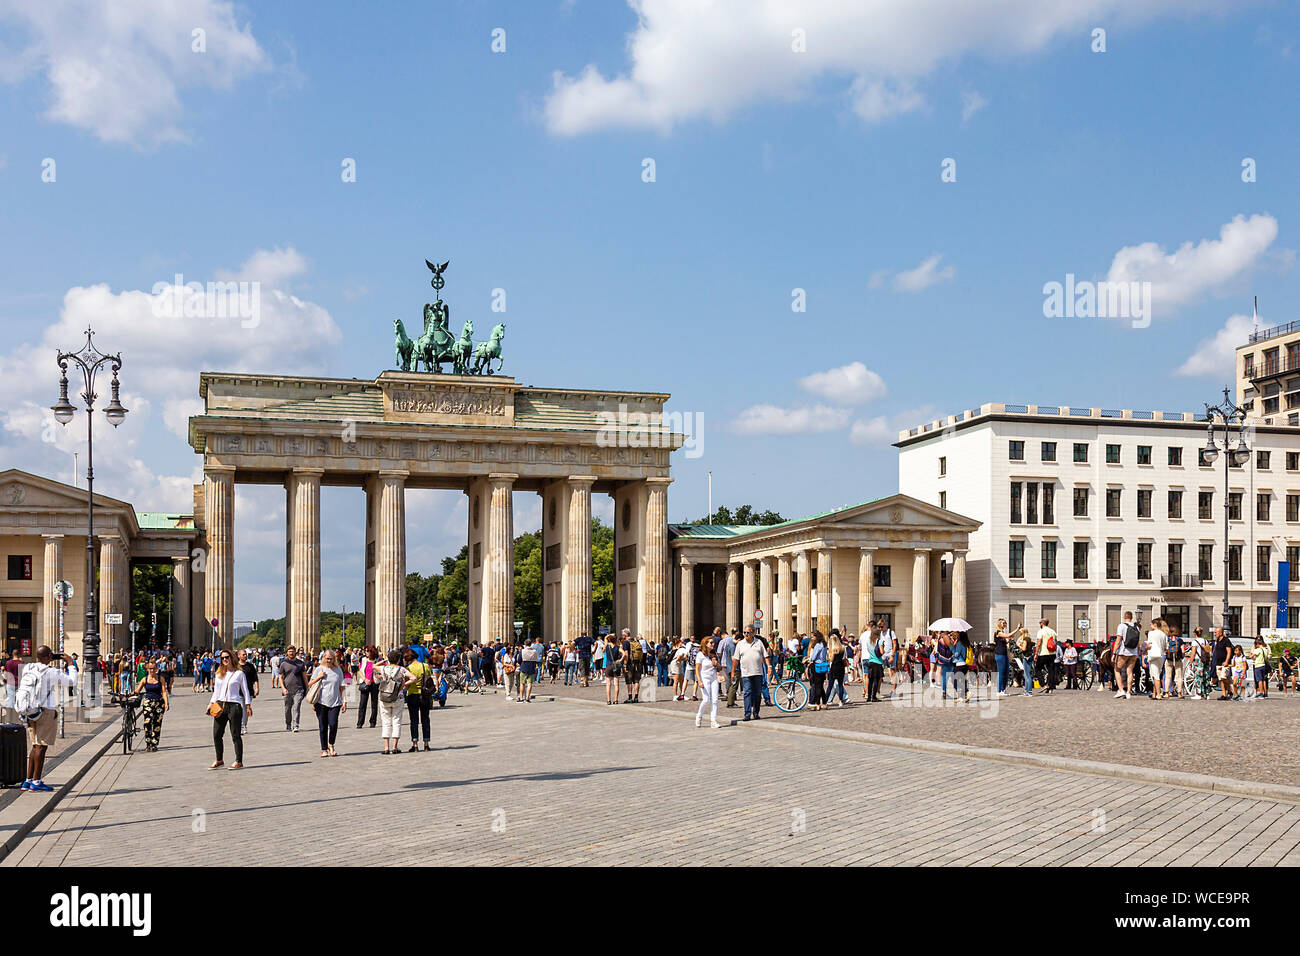 Les touristes sur la Pariser Platz en face de la porte de Brandebourg à Berlin, Allemagne Banque D'Images